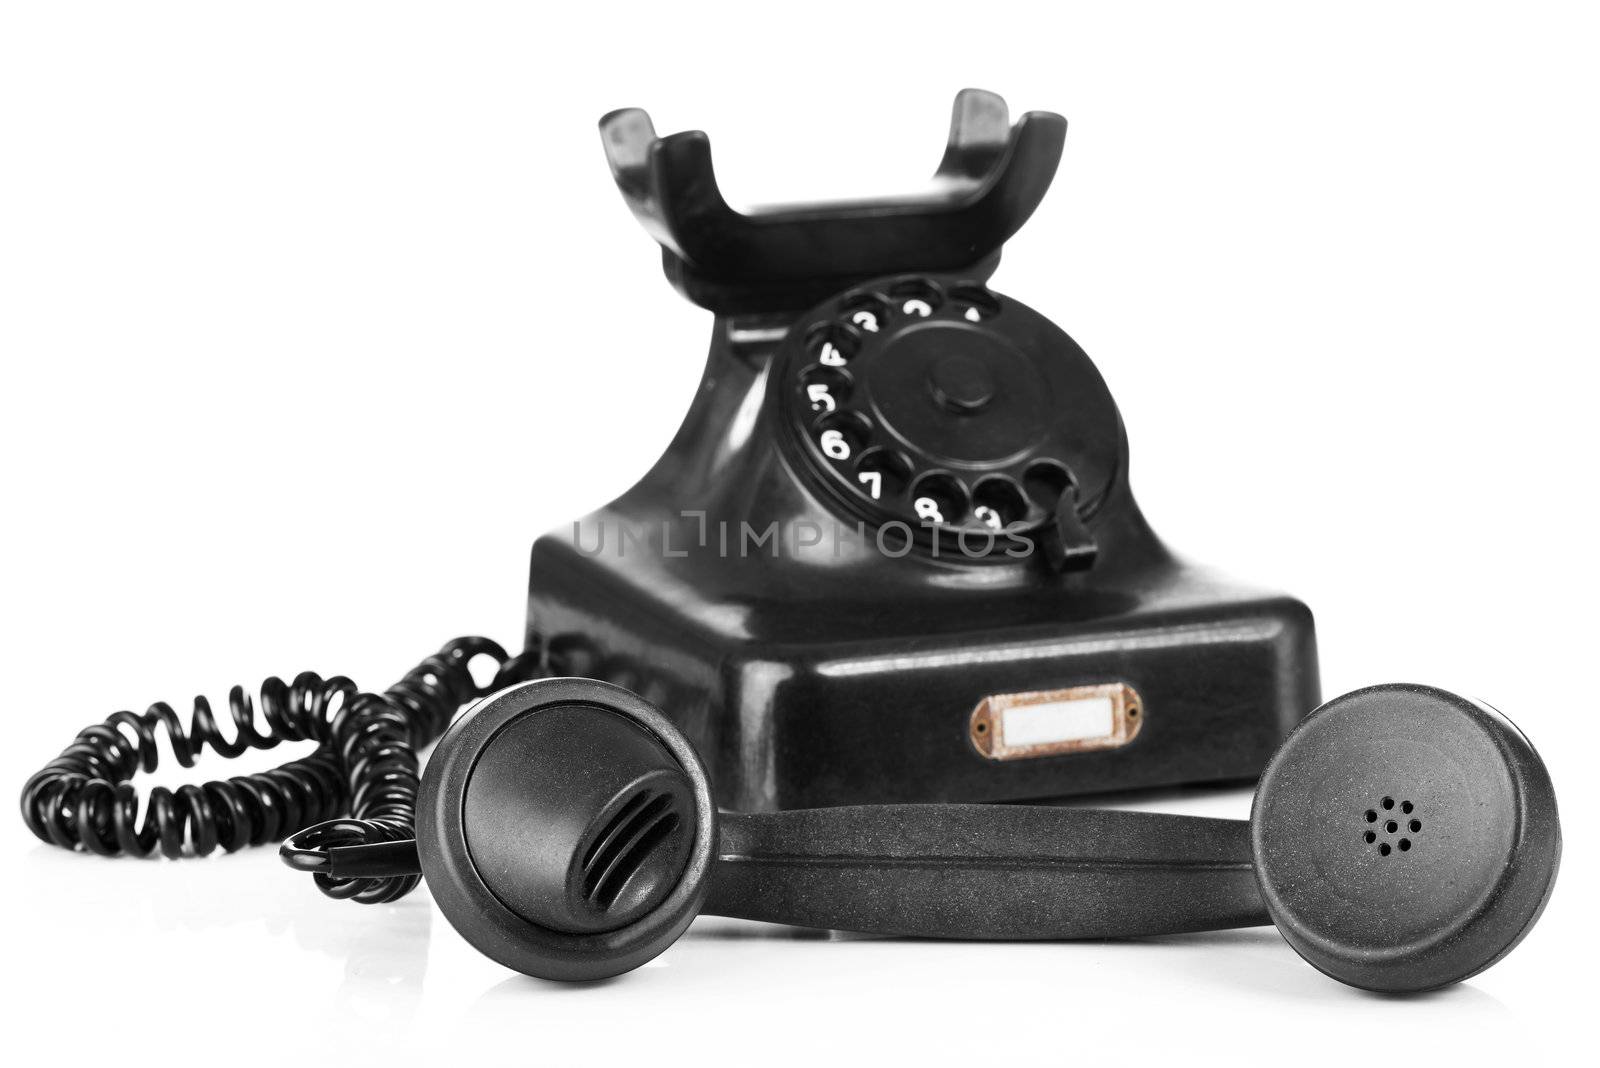 Old black phone